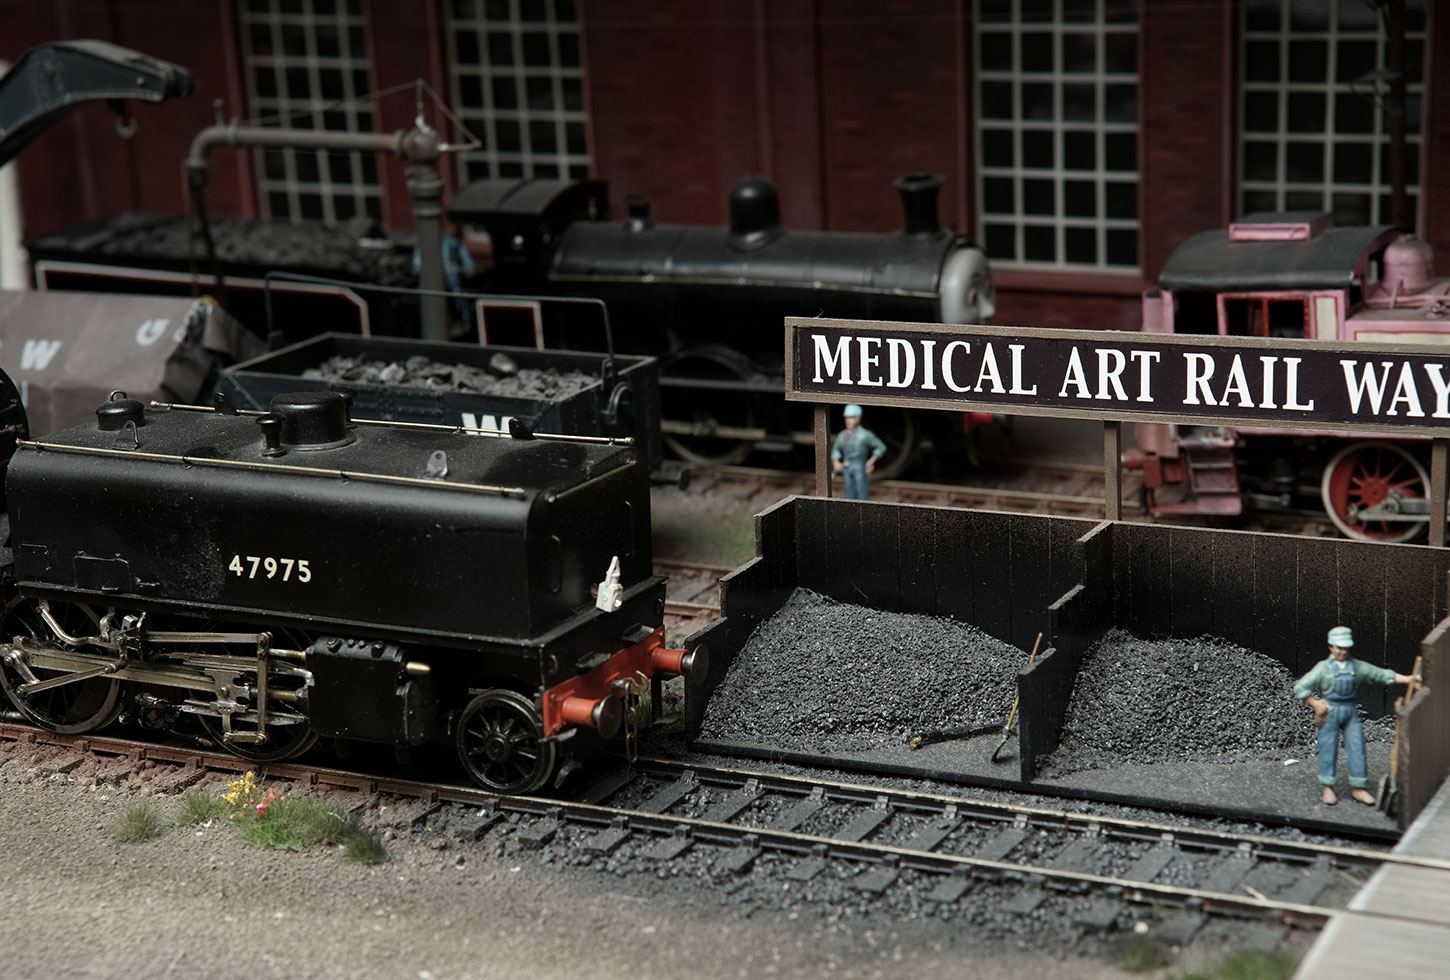 蒸気機関車 模型 イギリス